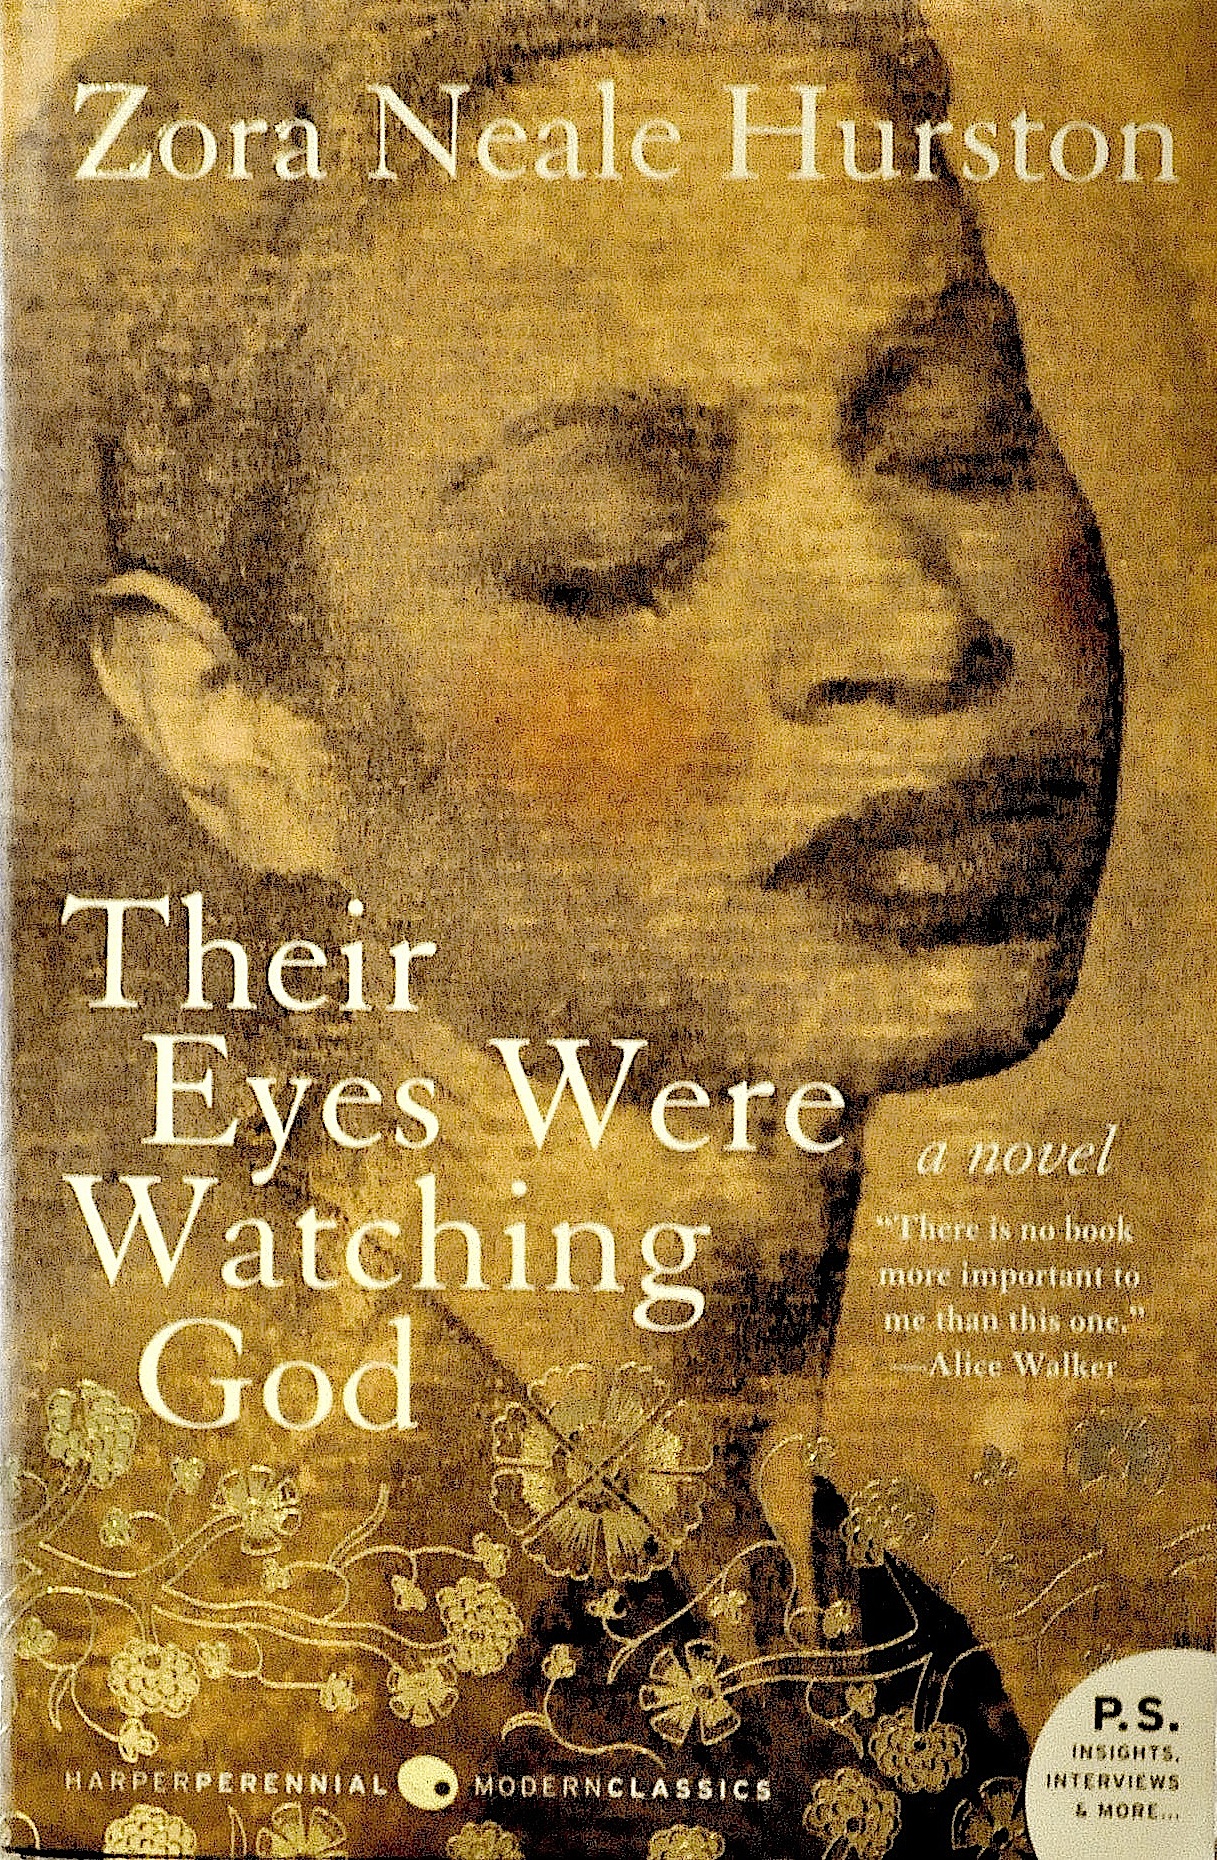 Zora Neale Hurston, African American Literature, Black Literature, African American History, Black History, KOLUMN Magazine, KOLUMN